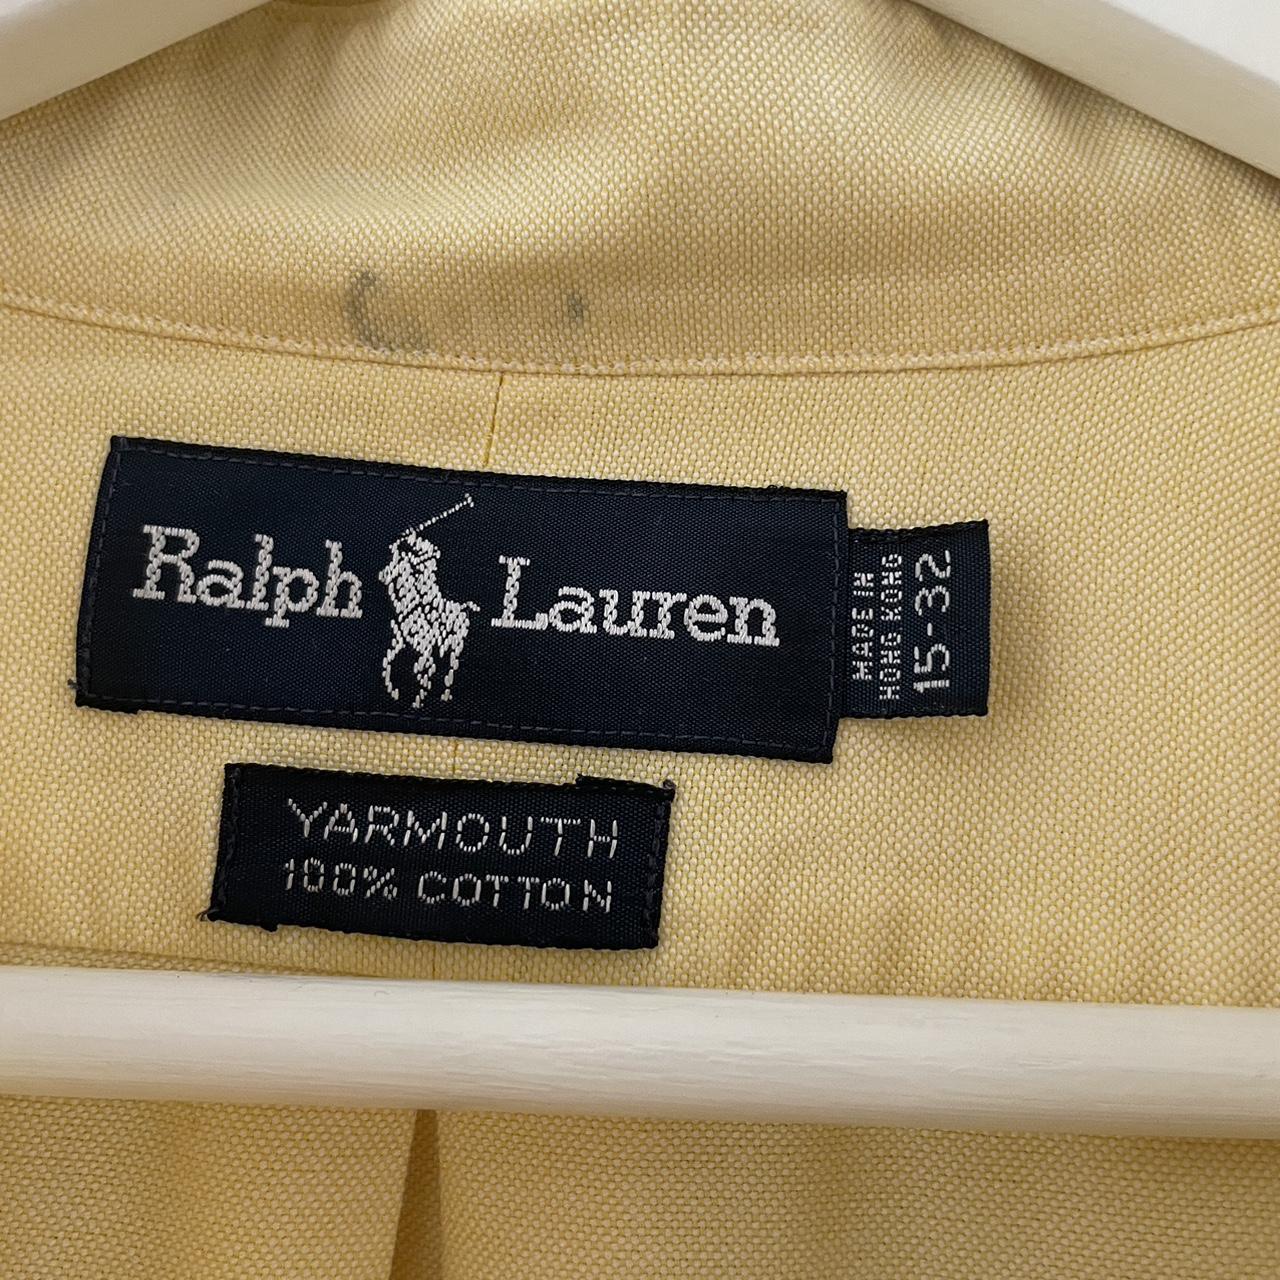 Vintage Ralph Lauren Shirt Beautiful shirt in a... - Depop